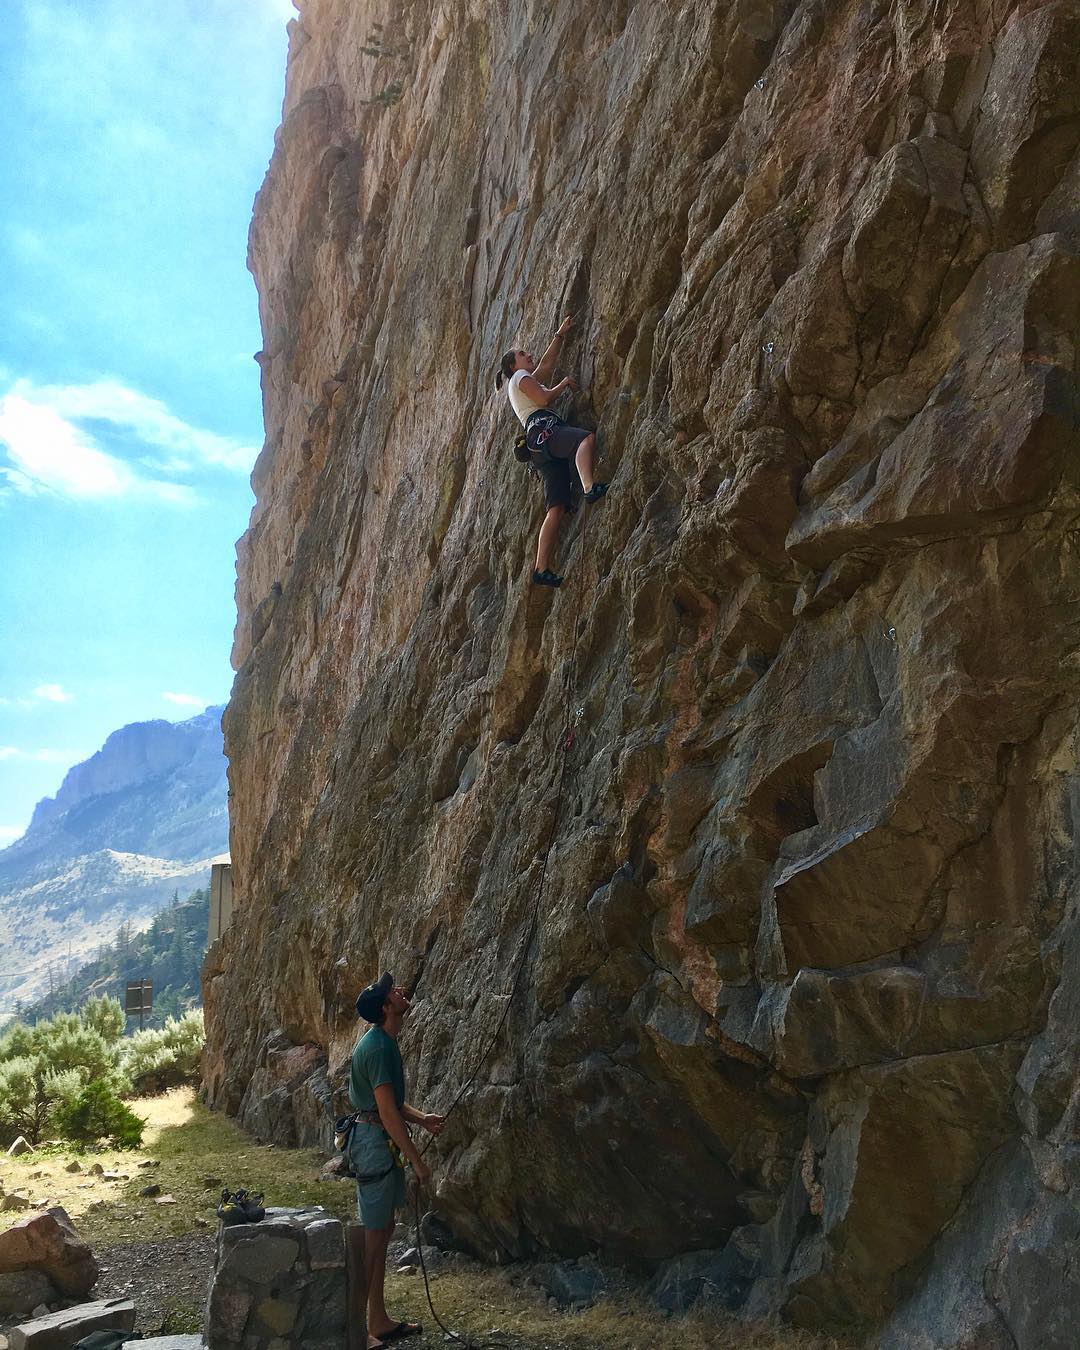 Me rock climbing in Cody, Wyoming in 2017